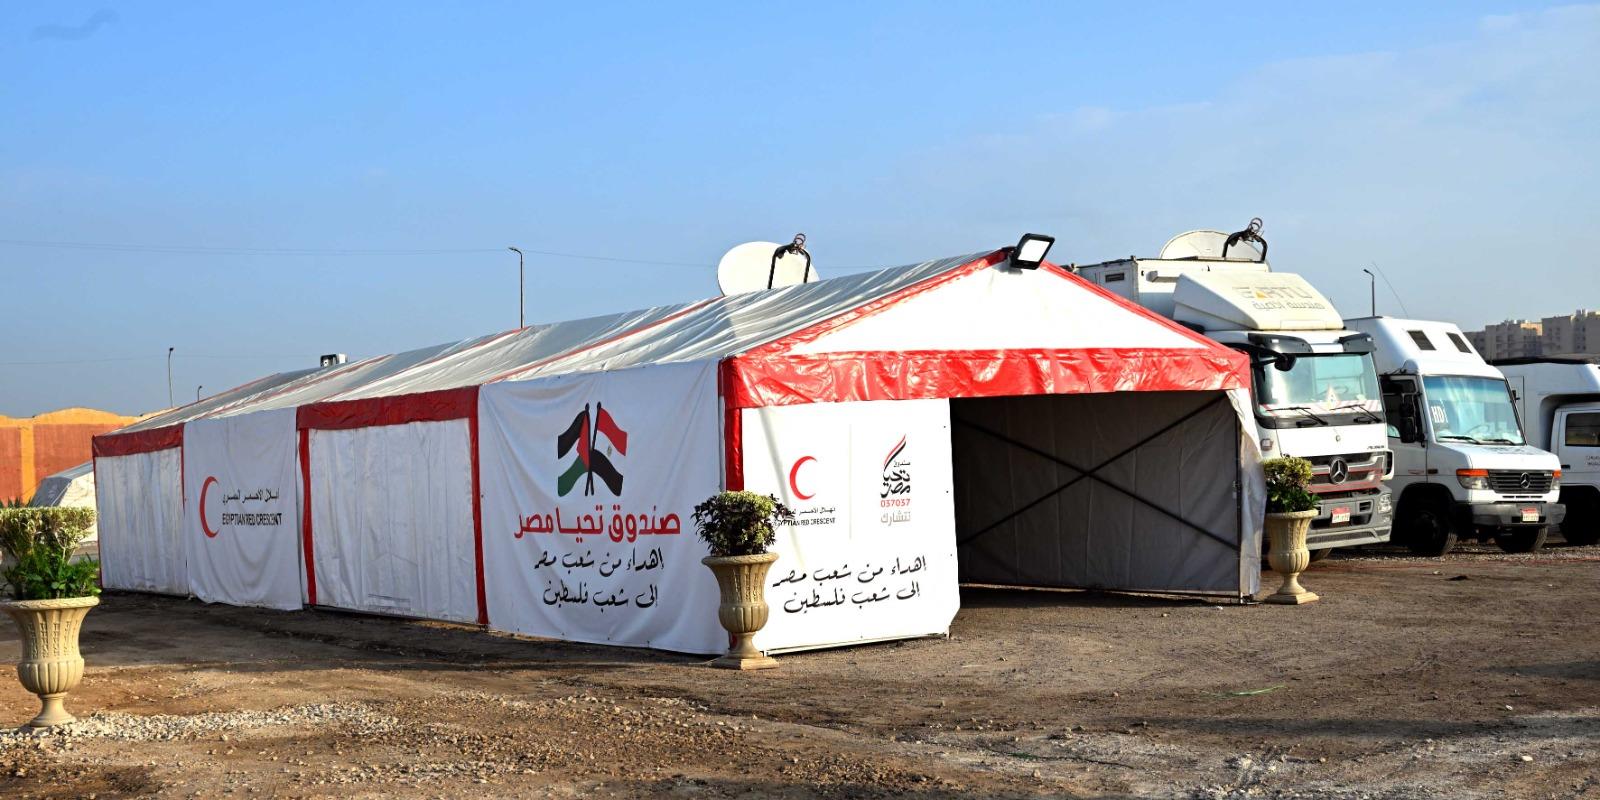 رئيس الوزراء يطلق أكبر قافلة مساعدات إنسانية شاملة للأشقاء الفلسطينيين في غزة من "صندوق تحيا مصر"